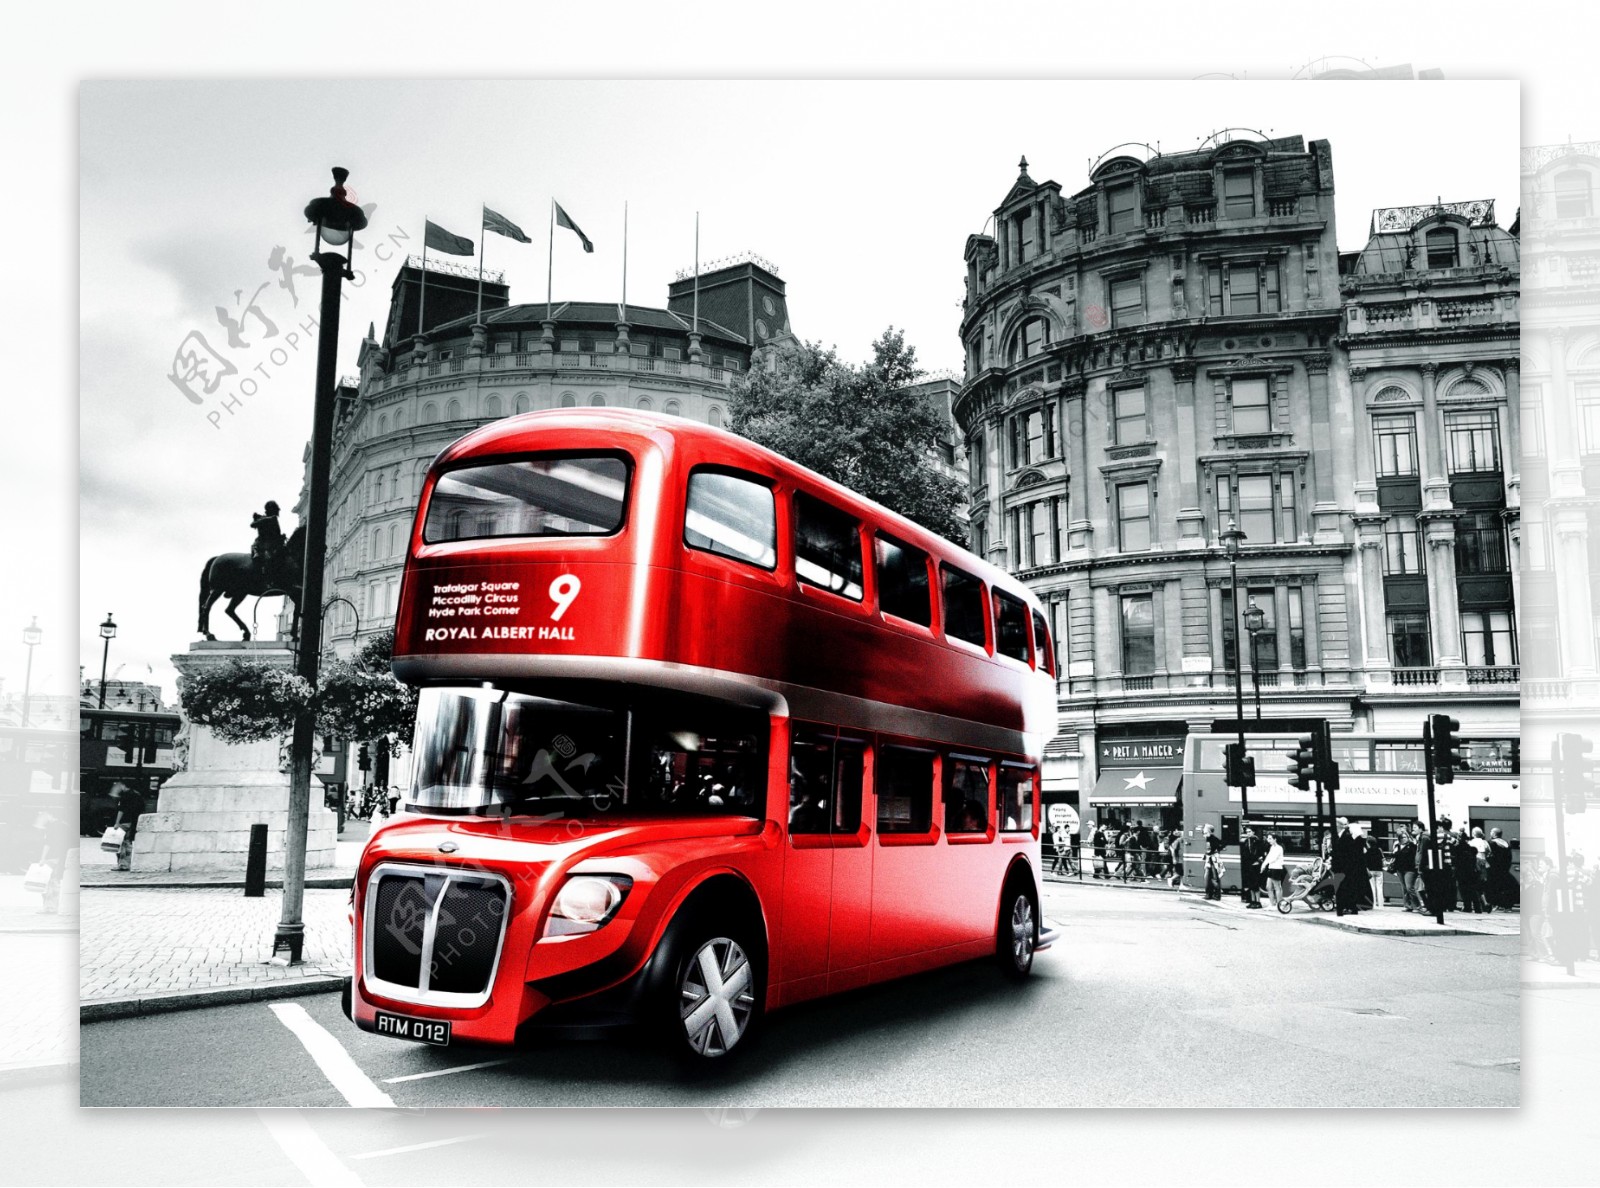 图片素材 : 运输, 公共交通, 英国, 总线, 伦敦, 双层巴士, 陆地车辆, 交通方式, 大都市区, 旅游巴士服务 4032x2272 ...